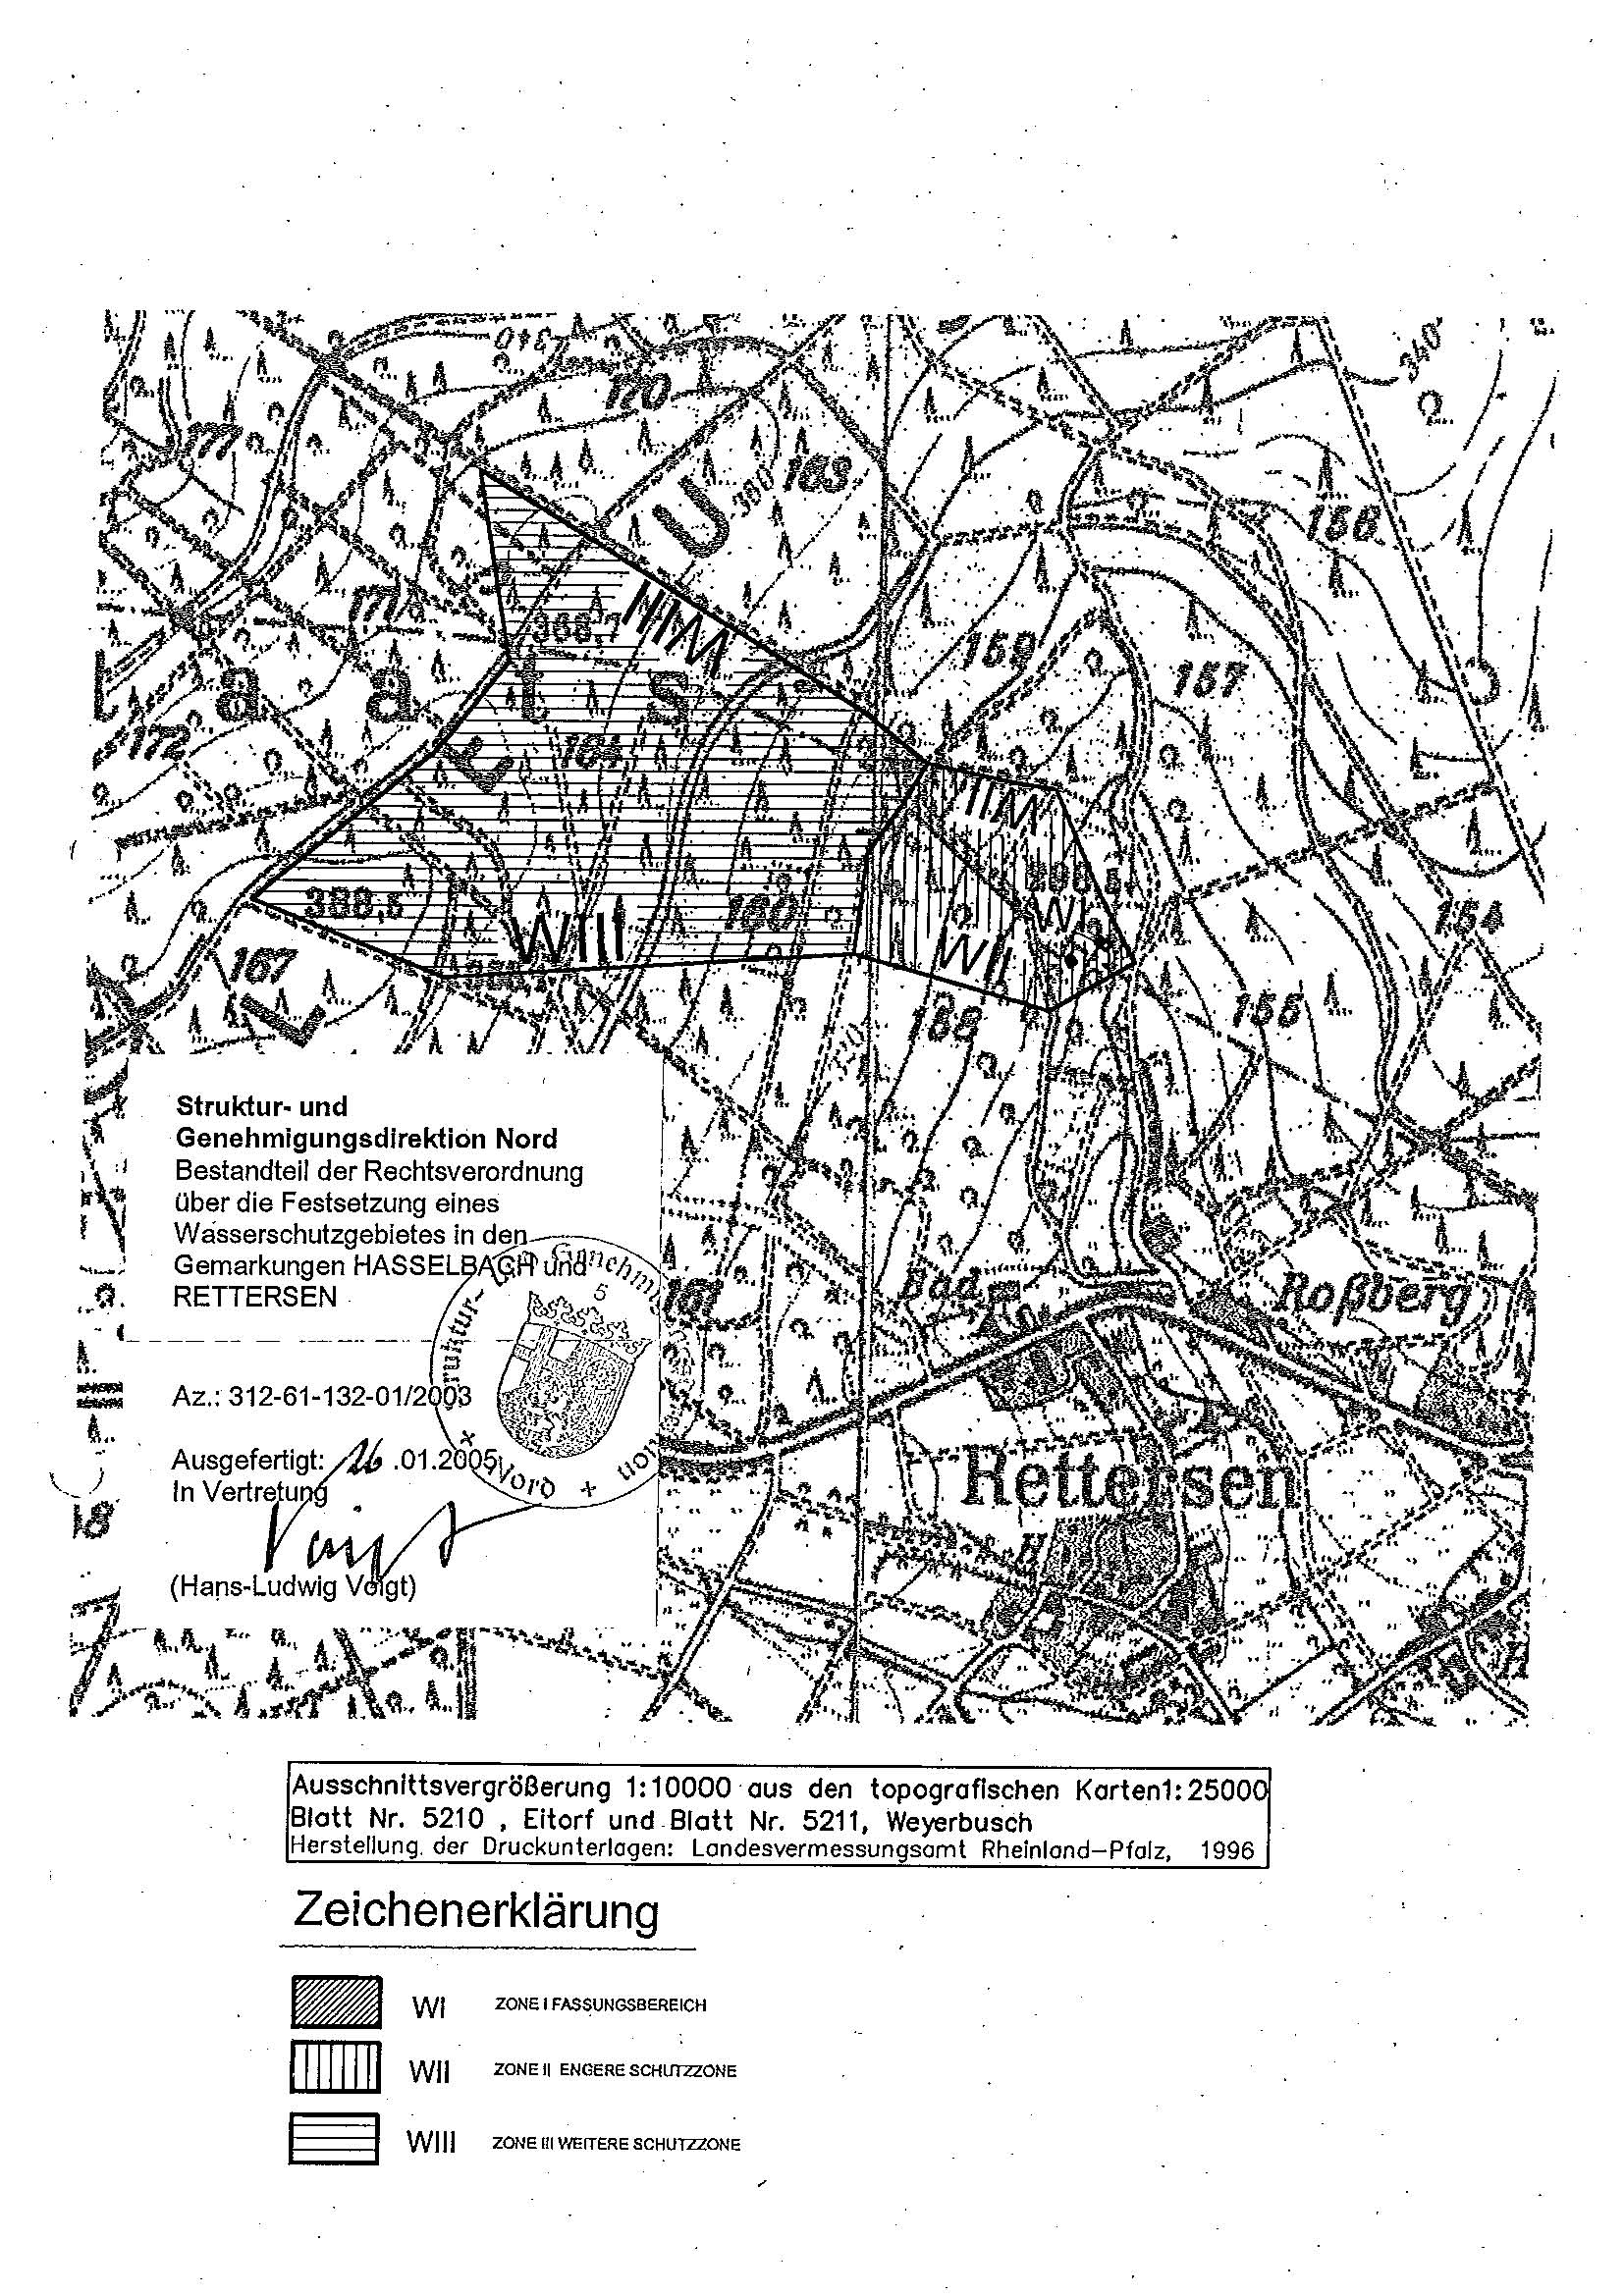 Die Übersichtskarte zeigt die Wasserschutzgebiete Altenkirchens (Schachtbrunnen 1 Hasselbach und 2 Rettersen)